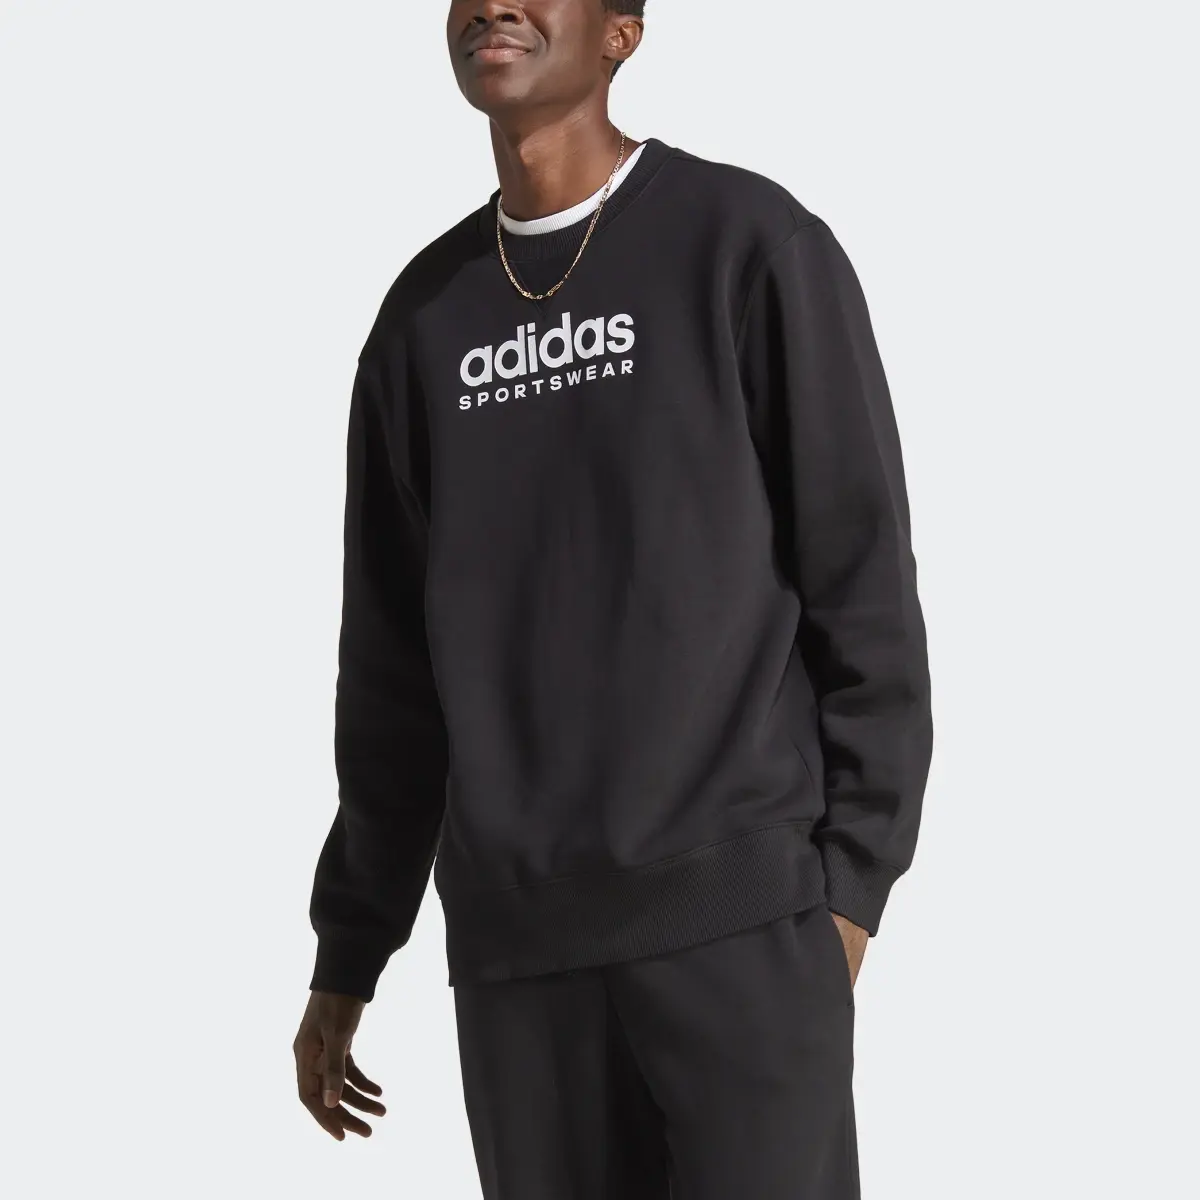 Adidas All SZN Fleece Graphic Sweatshirt. 1